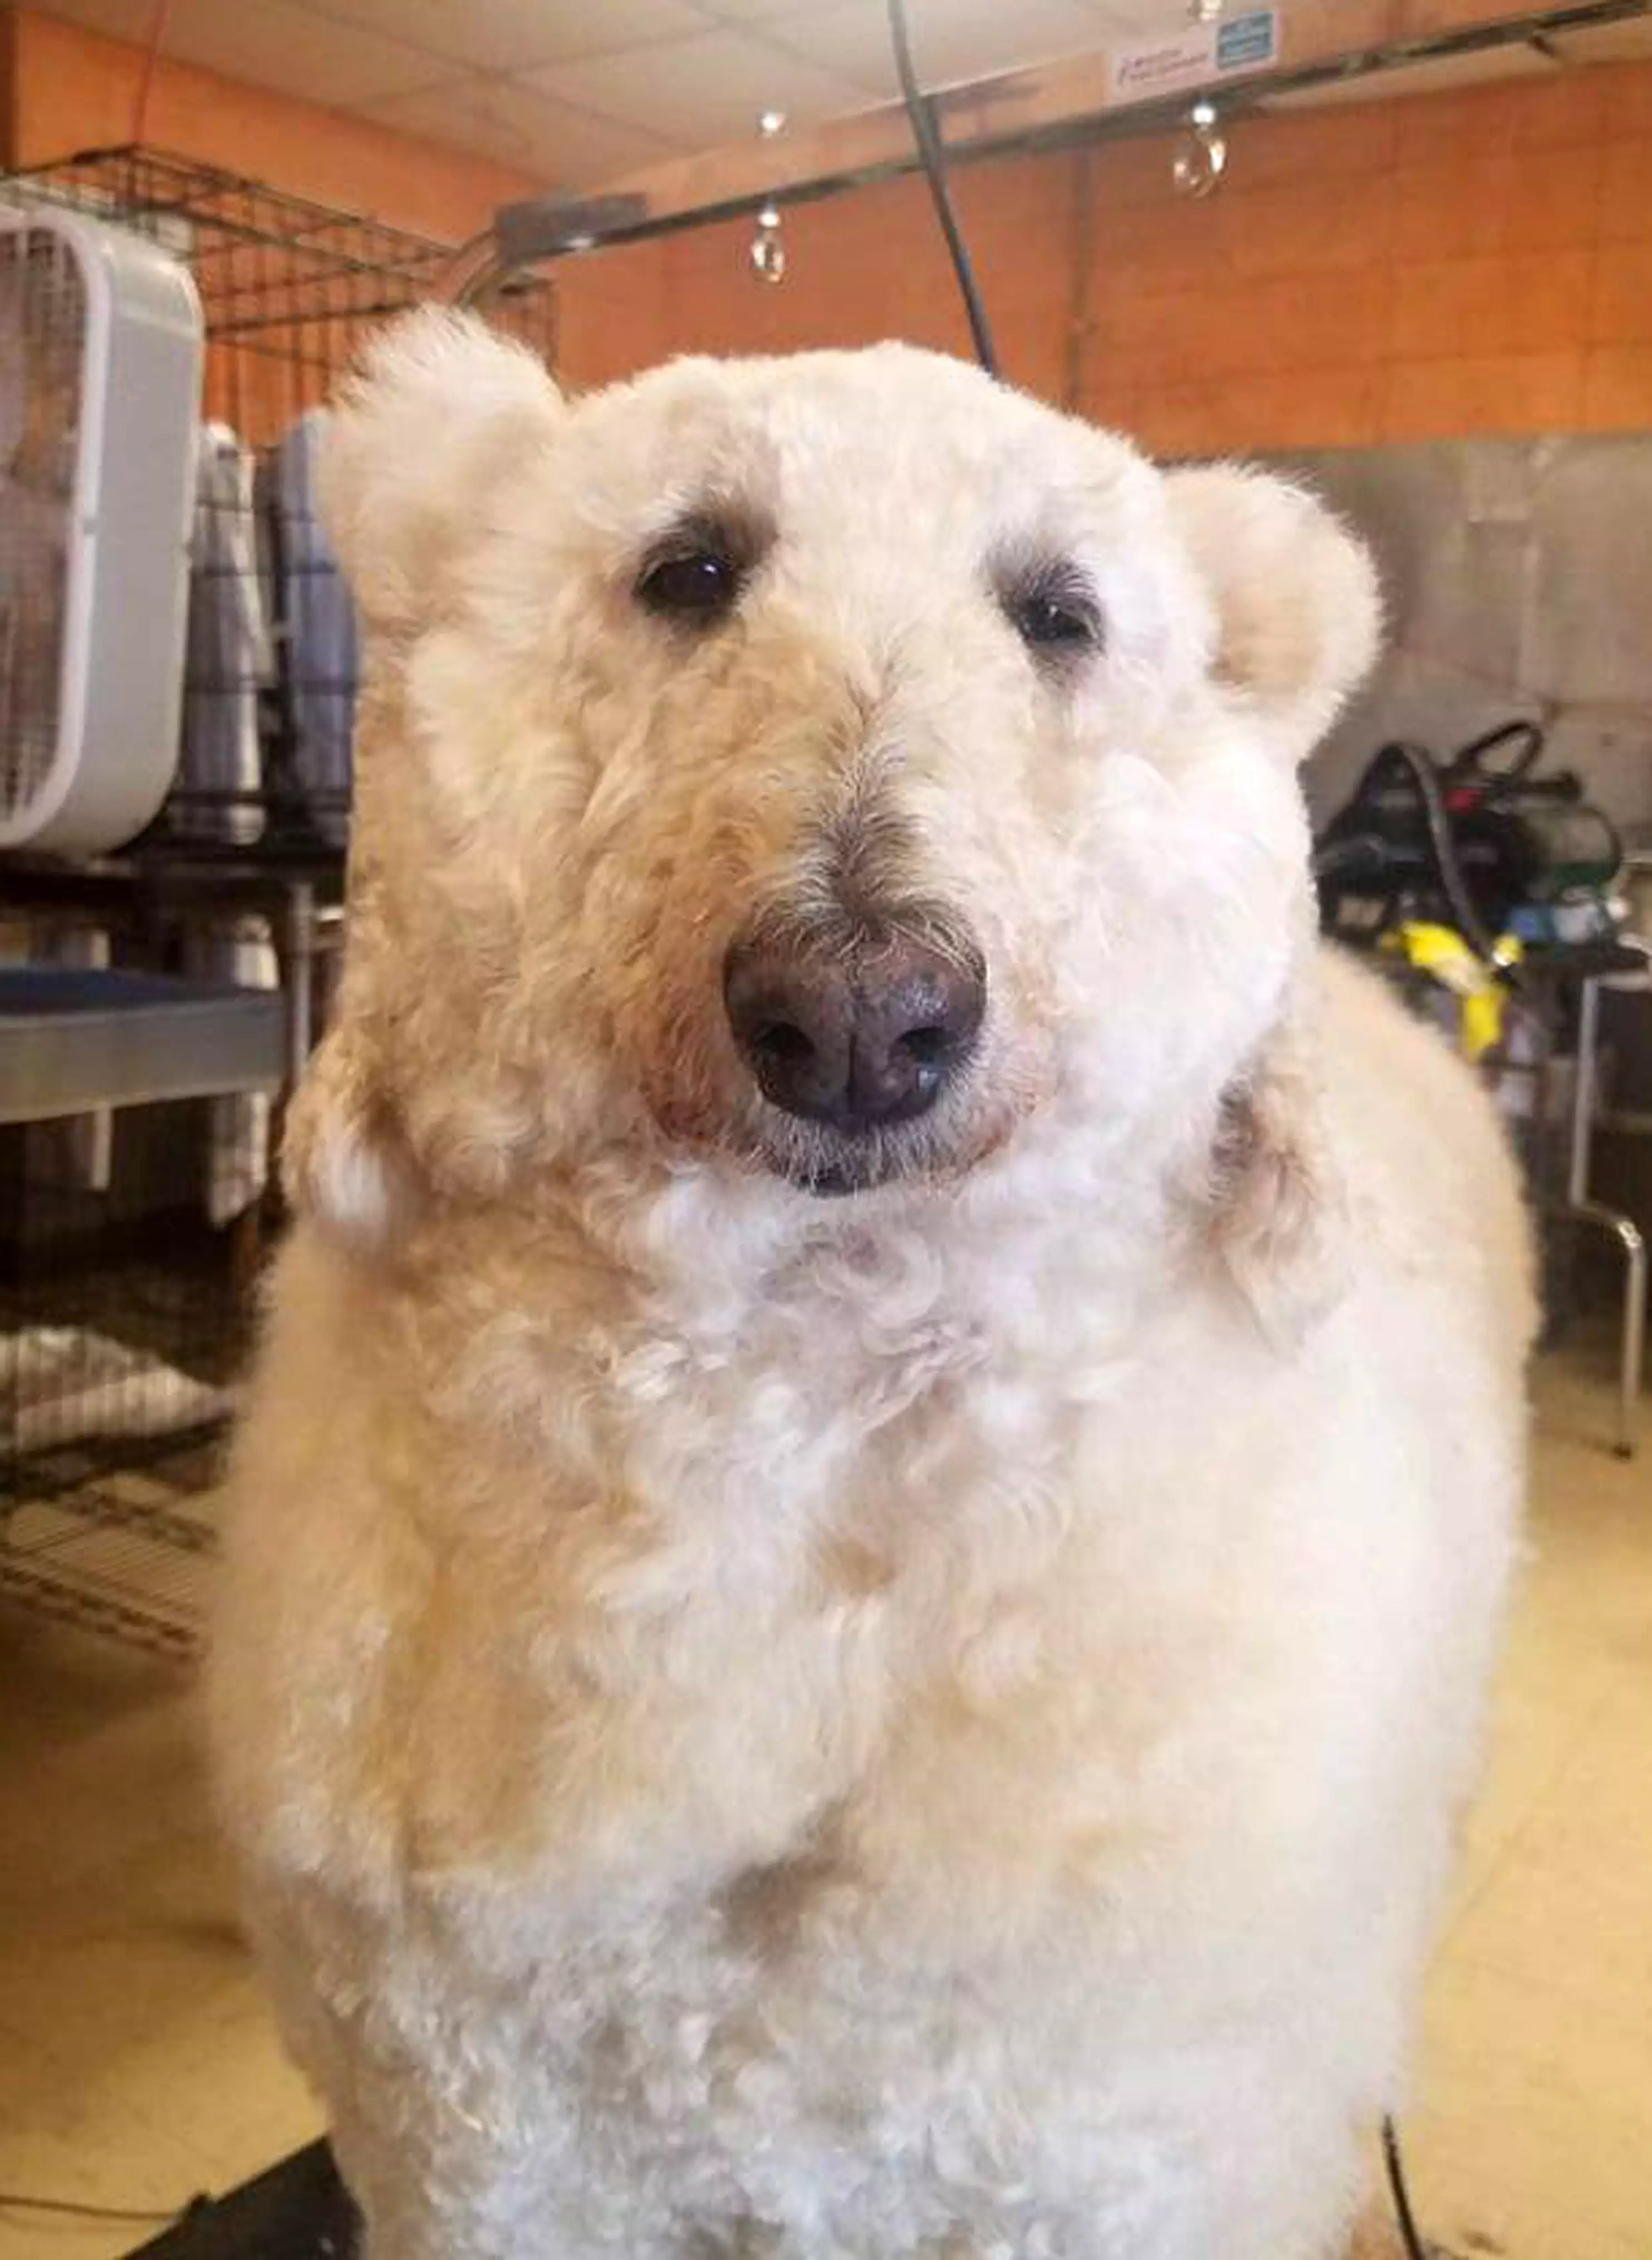 Is it a dog? Is it a polar bear?